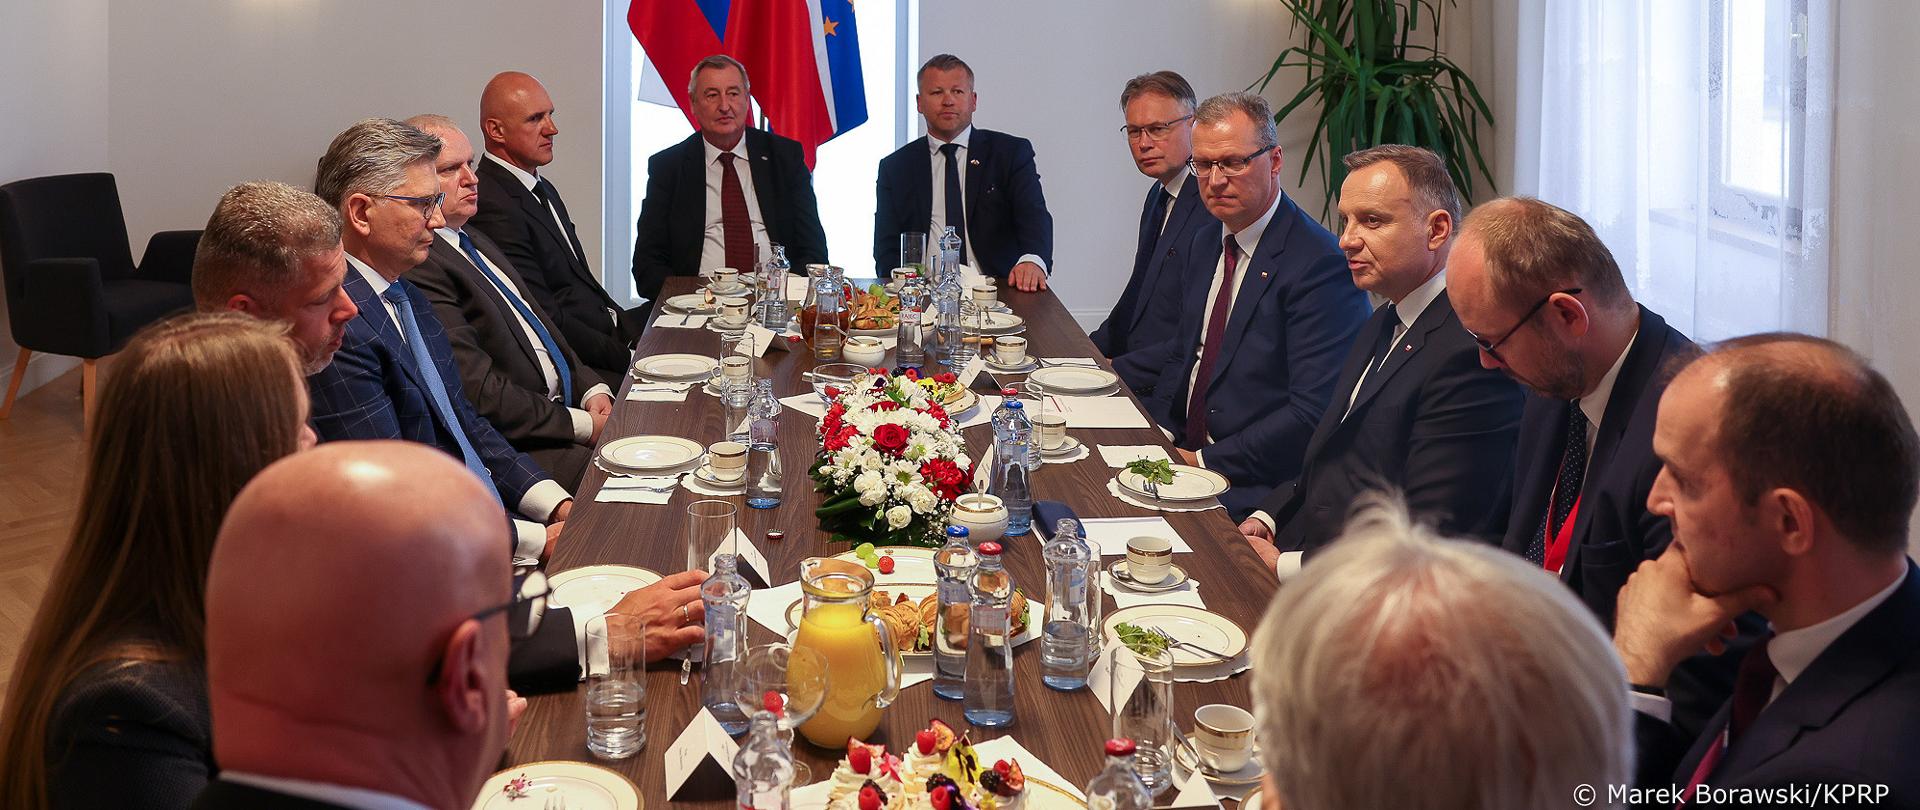 Spotkanie Prezydenta RP z przedstawicielami polskiego biznesu